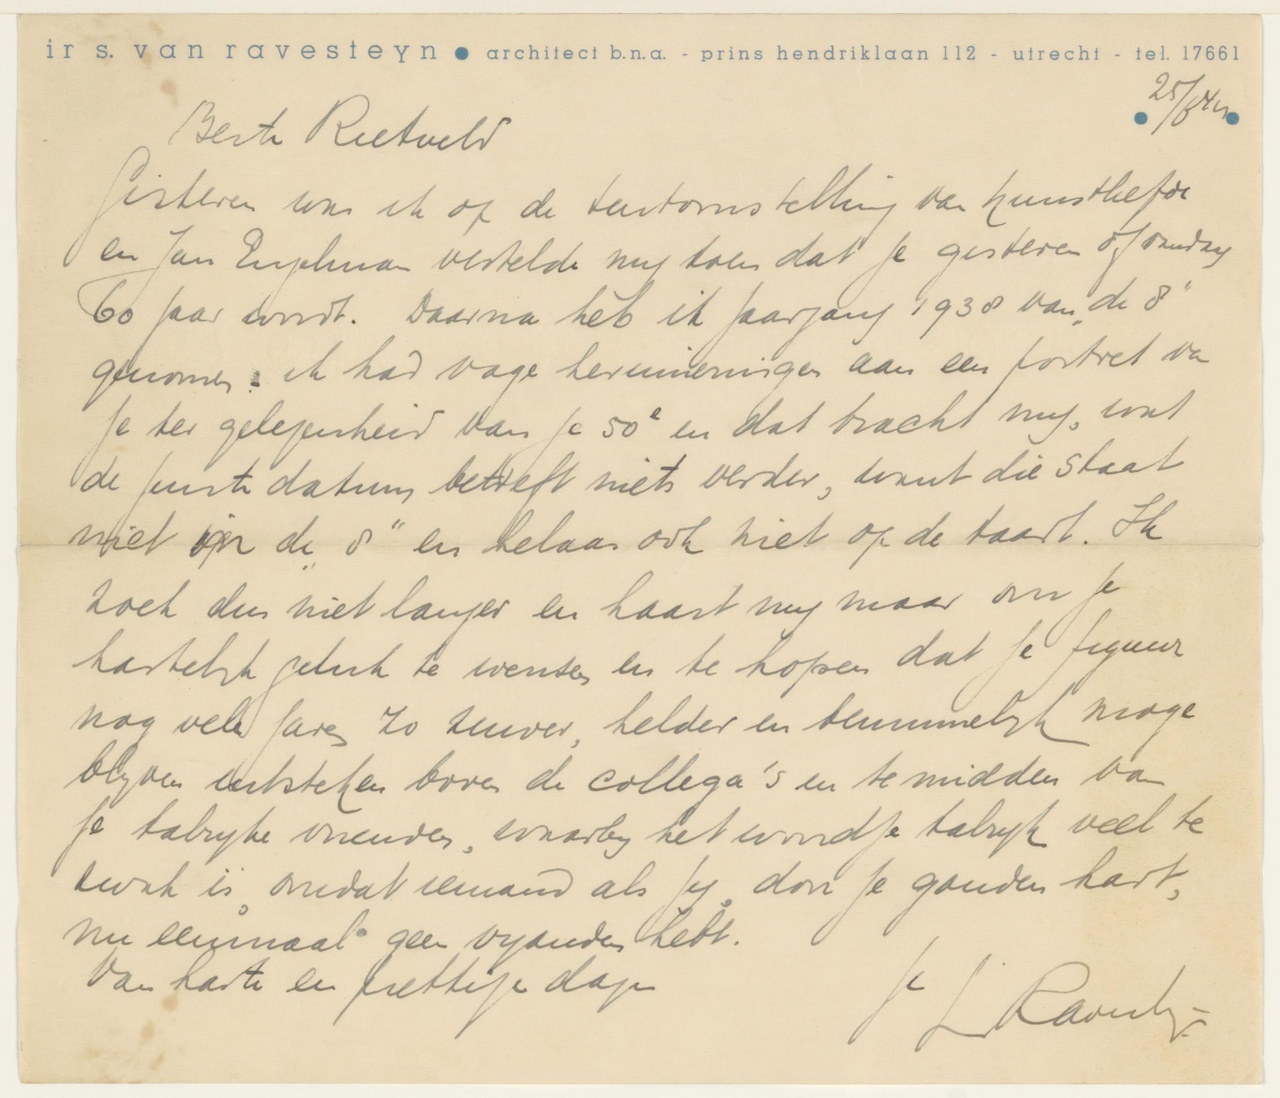 Brief van S. van Ravesteyn aan G. Rietveld